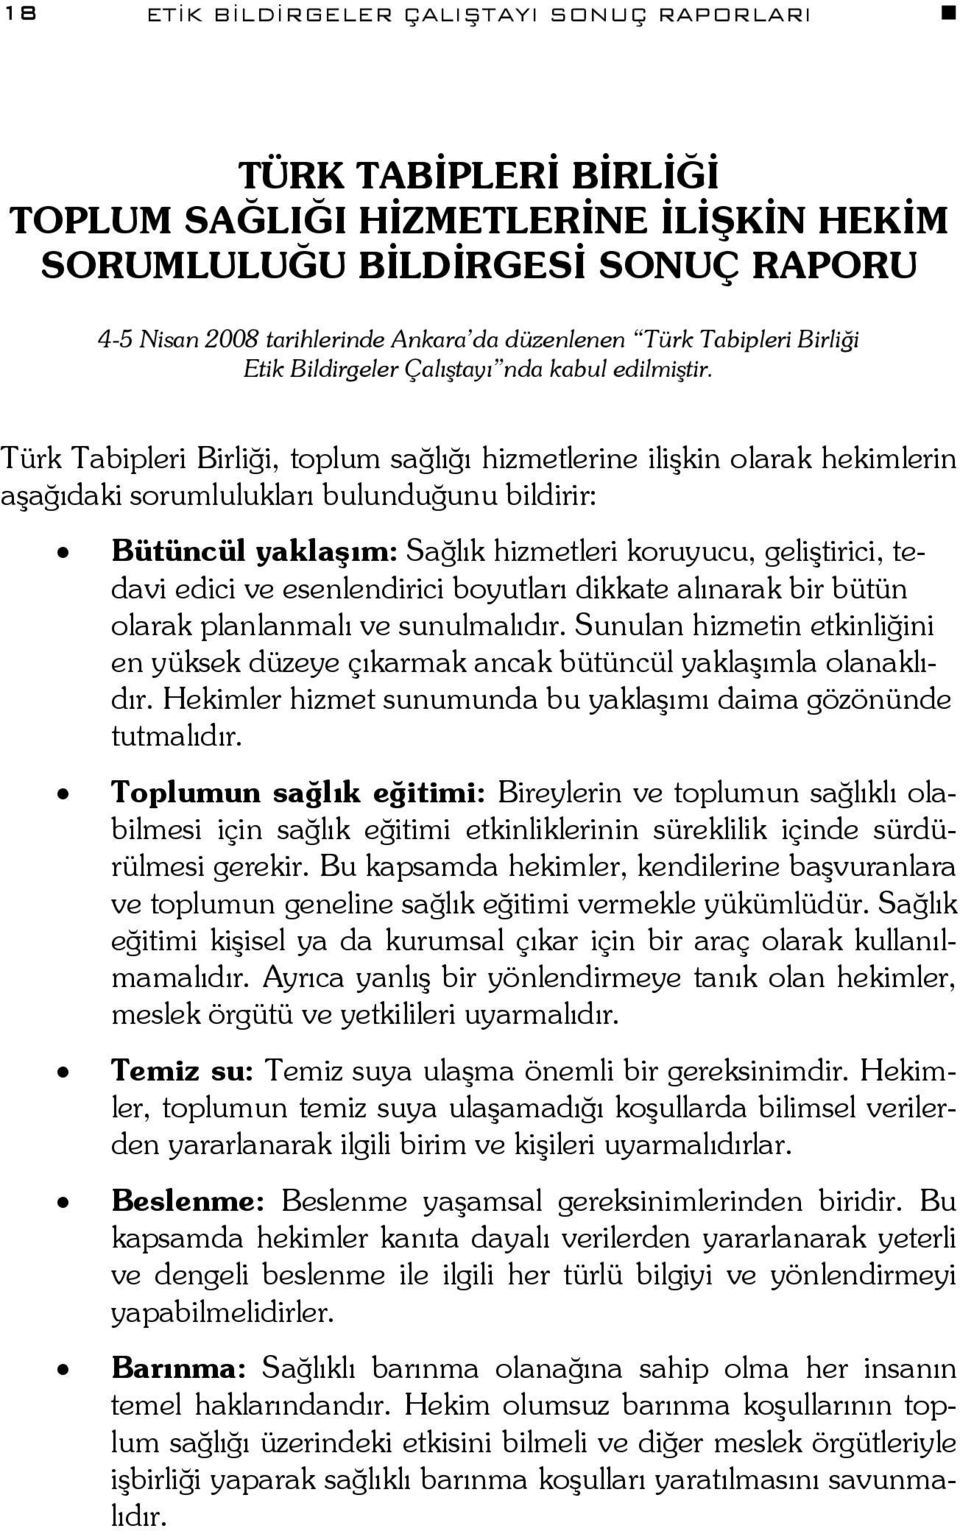 Türk Tabipleri Birliği, toplum sağlığı hizmetlerine ilişkin olarak hekimlerin aşağıdaki sorumlulukları bulunduğunu bildirir: Bütüncül yaklaşım: Sağlık hizmetleri koruyucu, geliştirici, tedavi edici